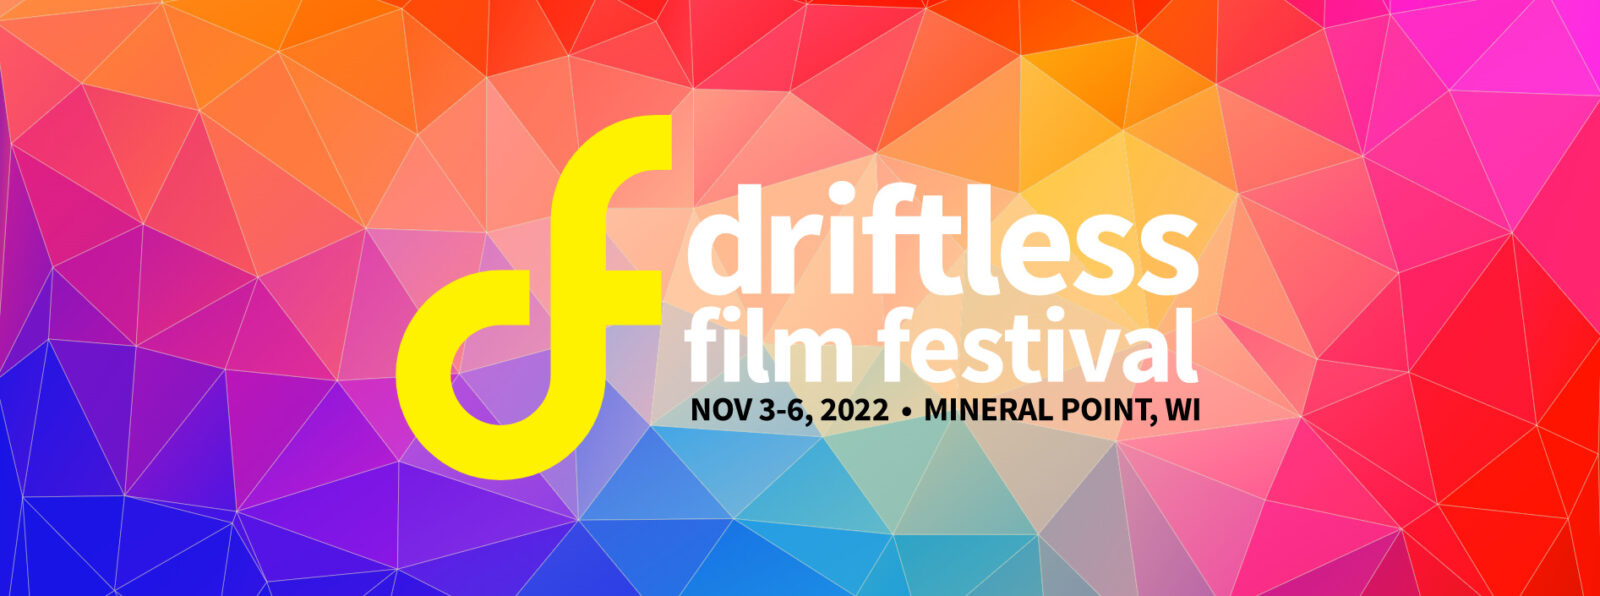 2022 Driftless Film Festival